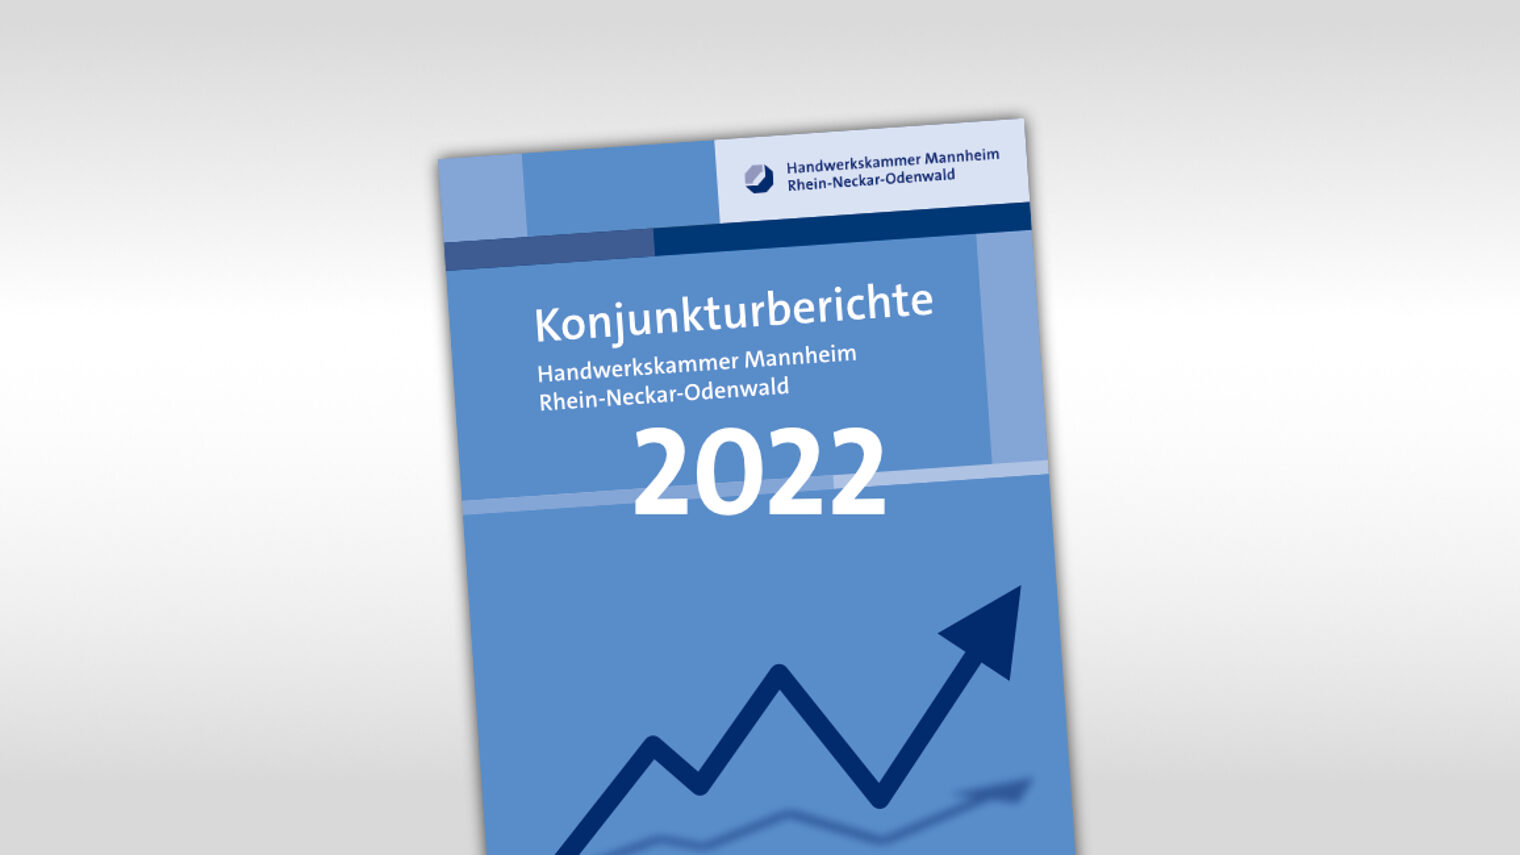 Titelmotiv Konjunkturbericht plus Jahreszahl 2022